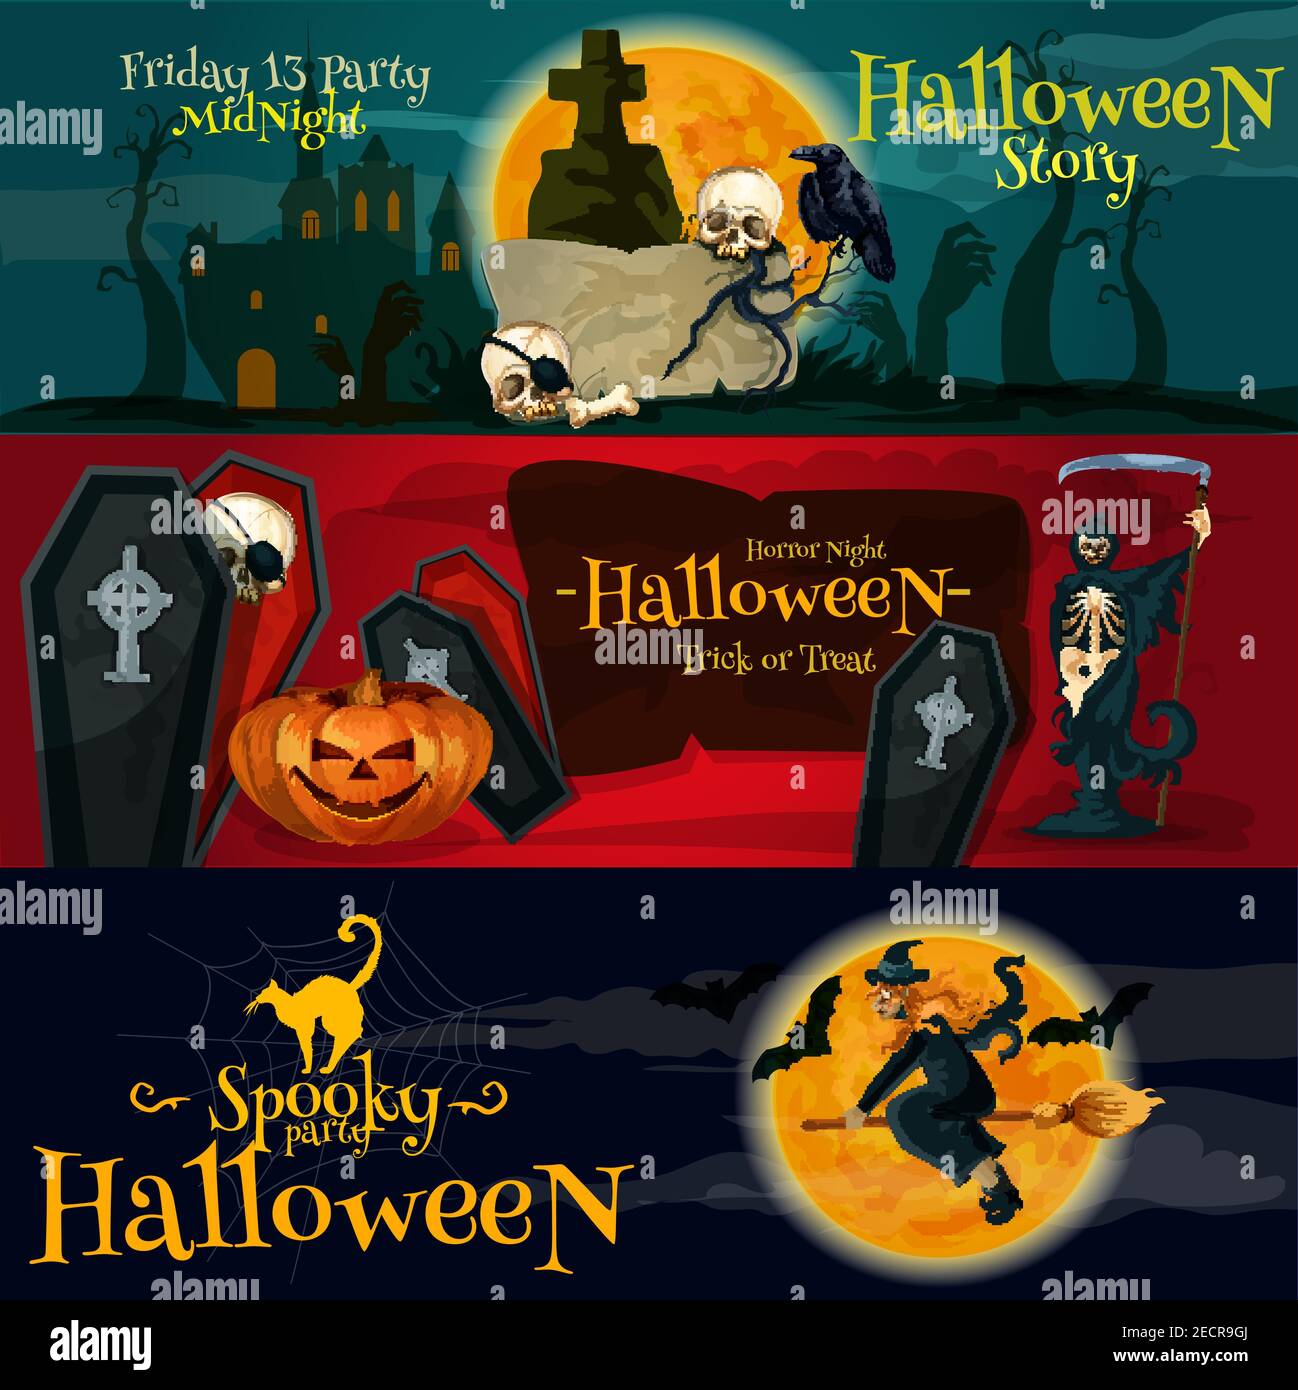 Cartoon Halloween Party Vektor Banner und Poster mit Gruß und Ivitation Text. Freitag 13 Grabstein, Horror Night Särge und Skelette, Spooky Stock Vektor